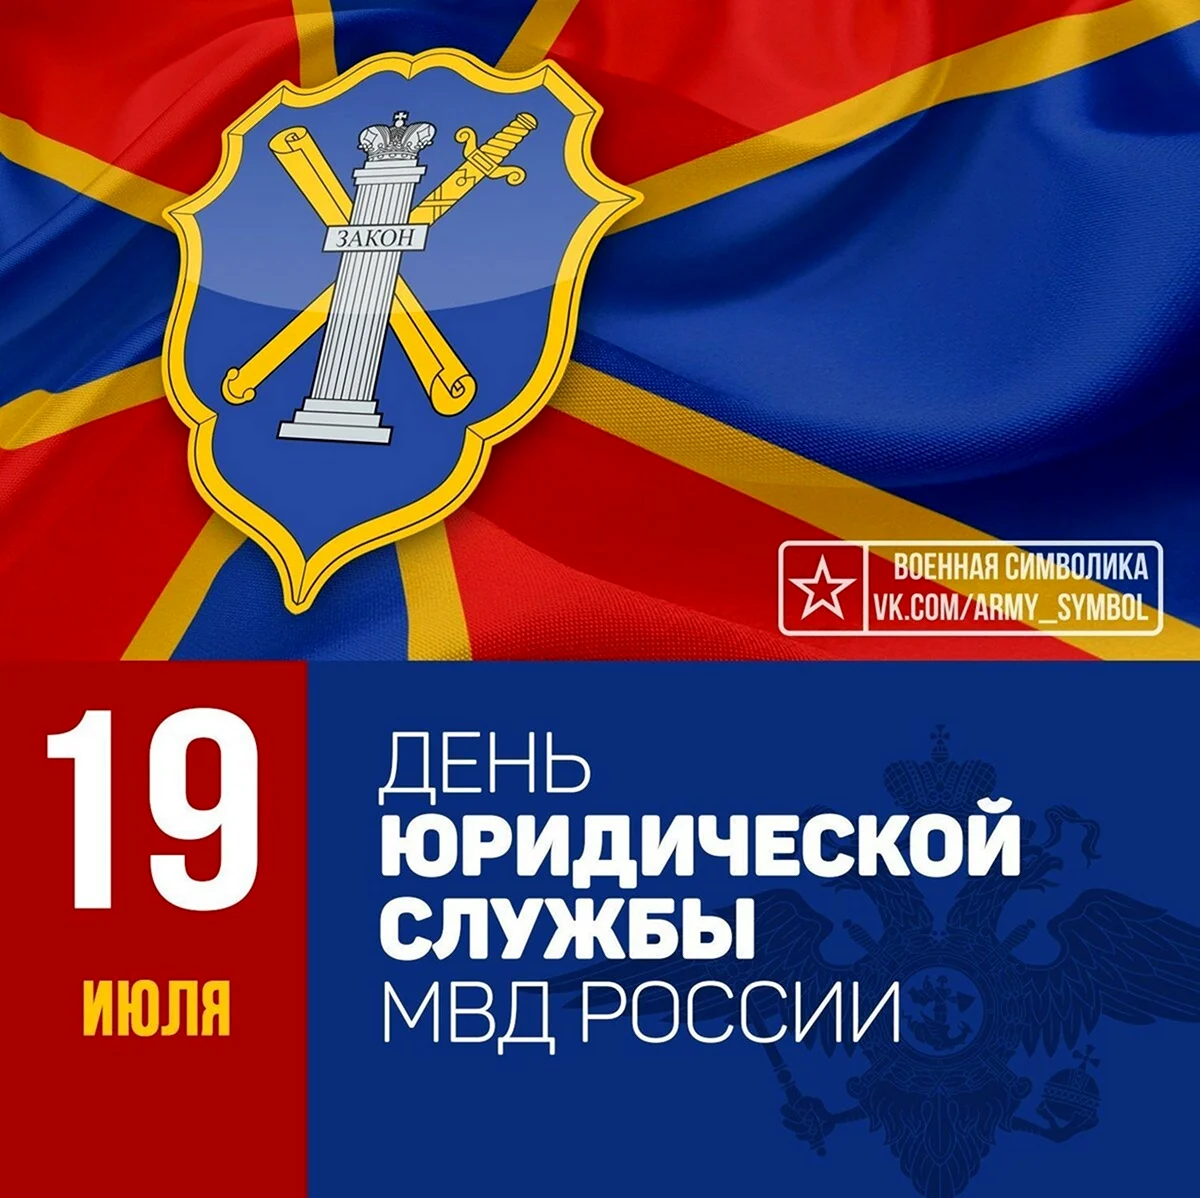 19 Июля день юридической службы Министерства внутренних дел РФ. Поздравление